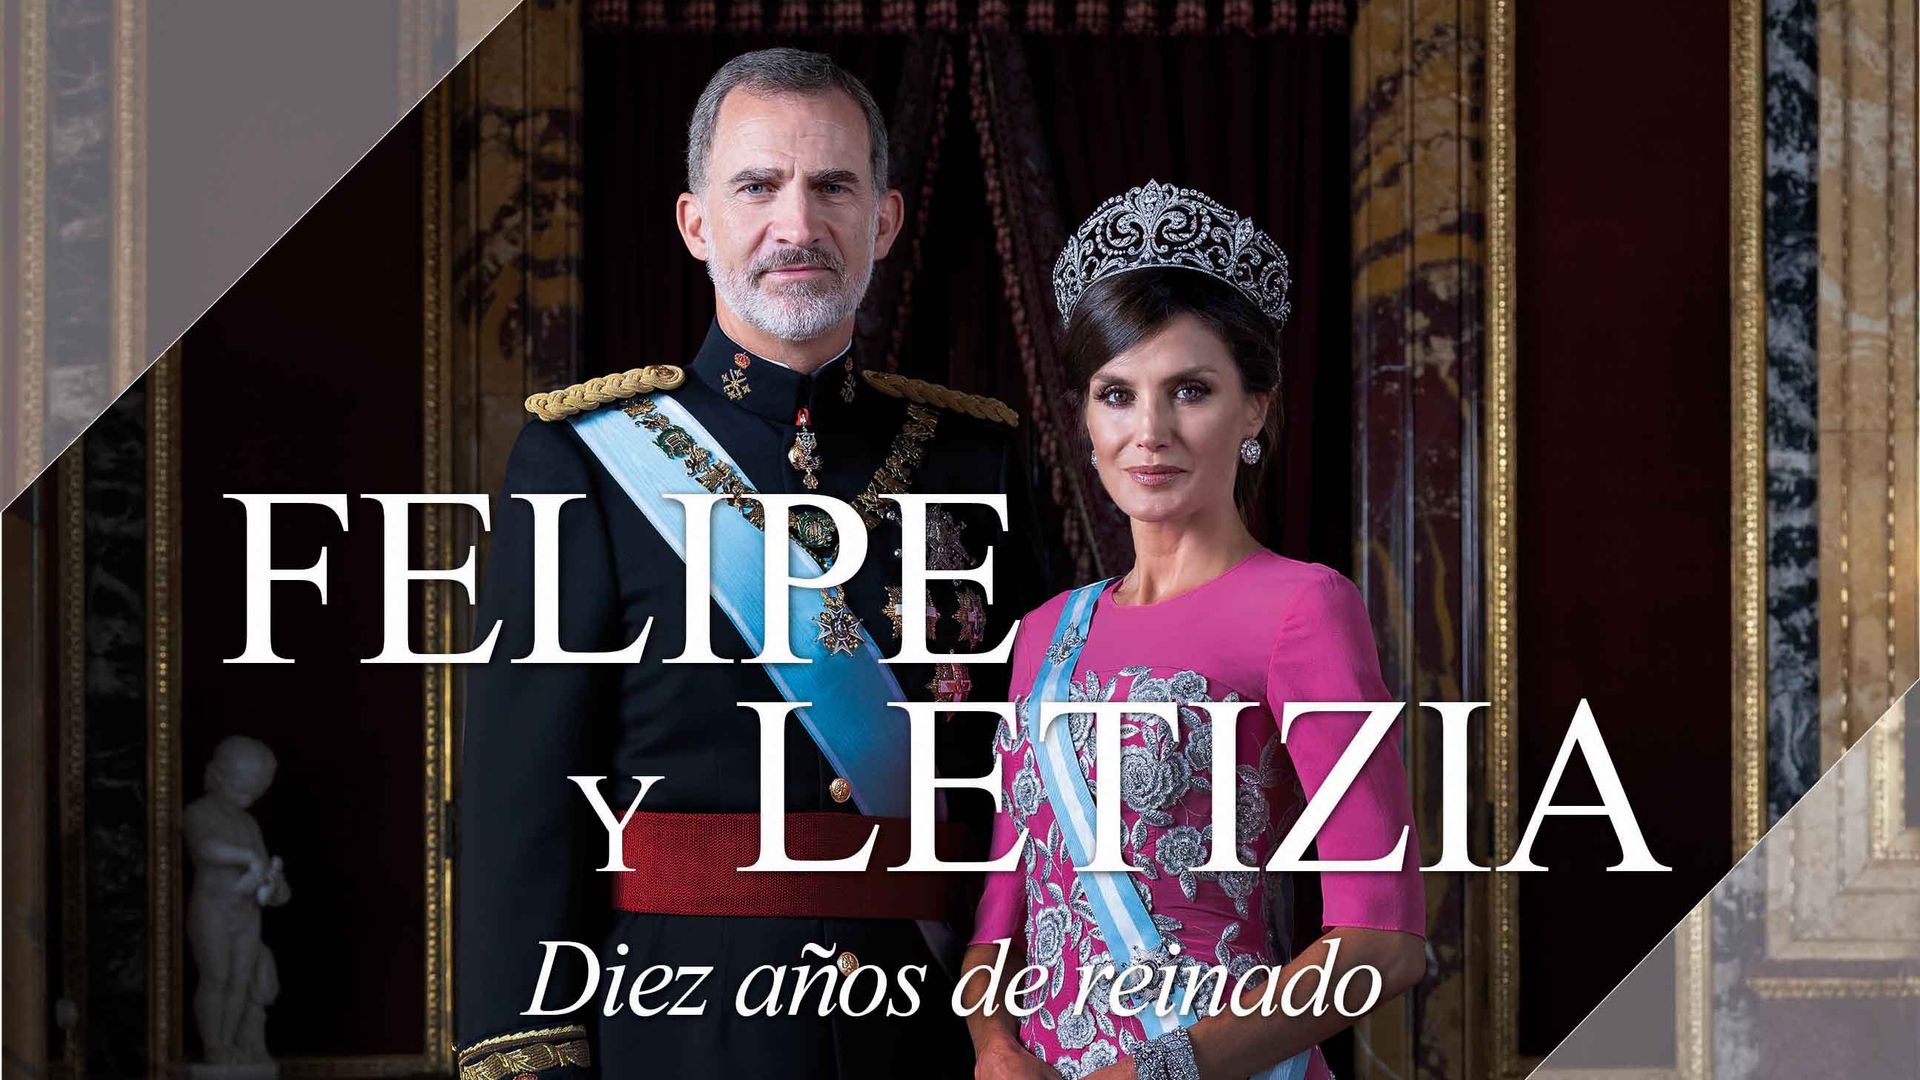 HOLA 4169 SERIES Documental sobre Felipe y Letizia, diez años de reinado